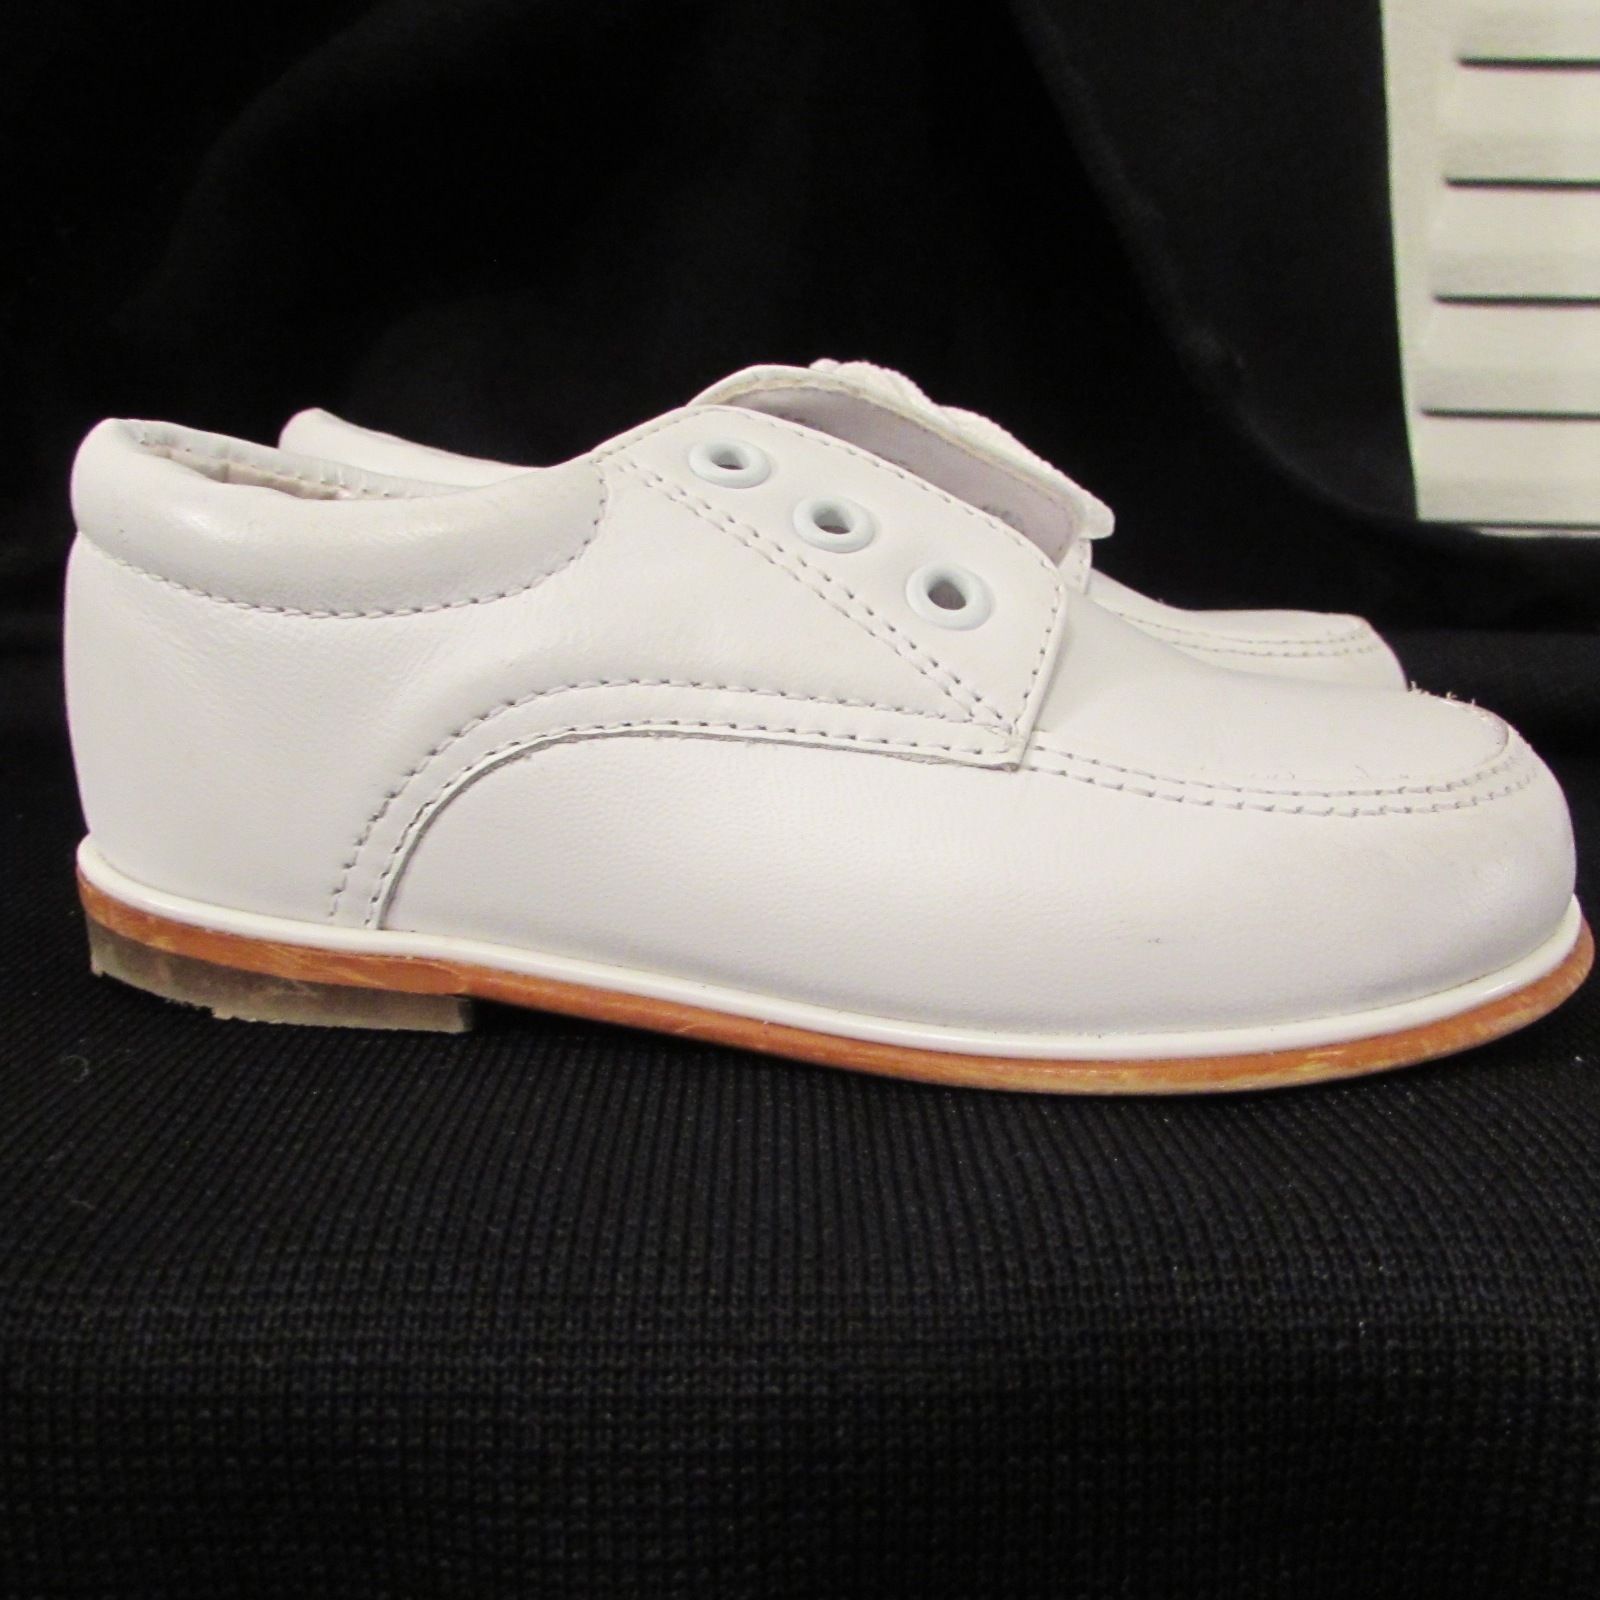 Karela Kids-Baby Unisex Leather White Hard Bottom Shoes w/Lace closure ...